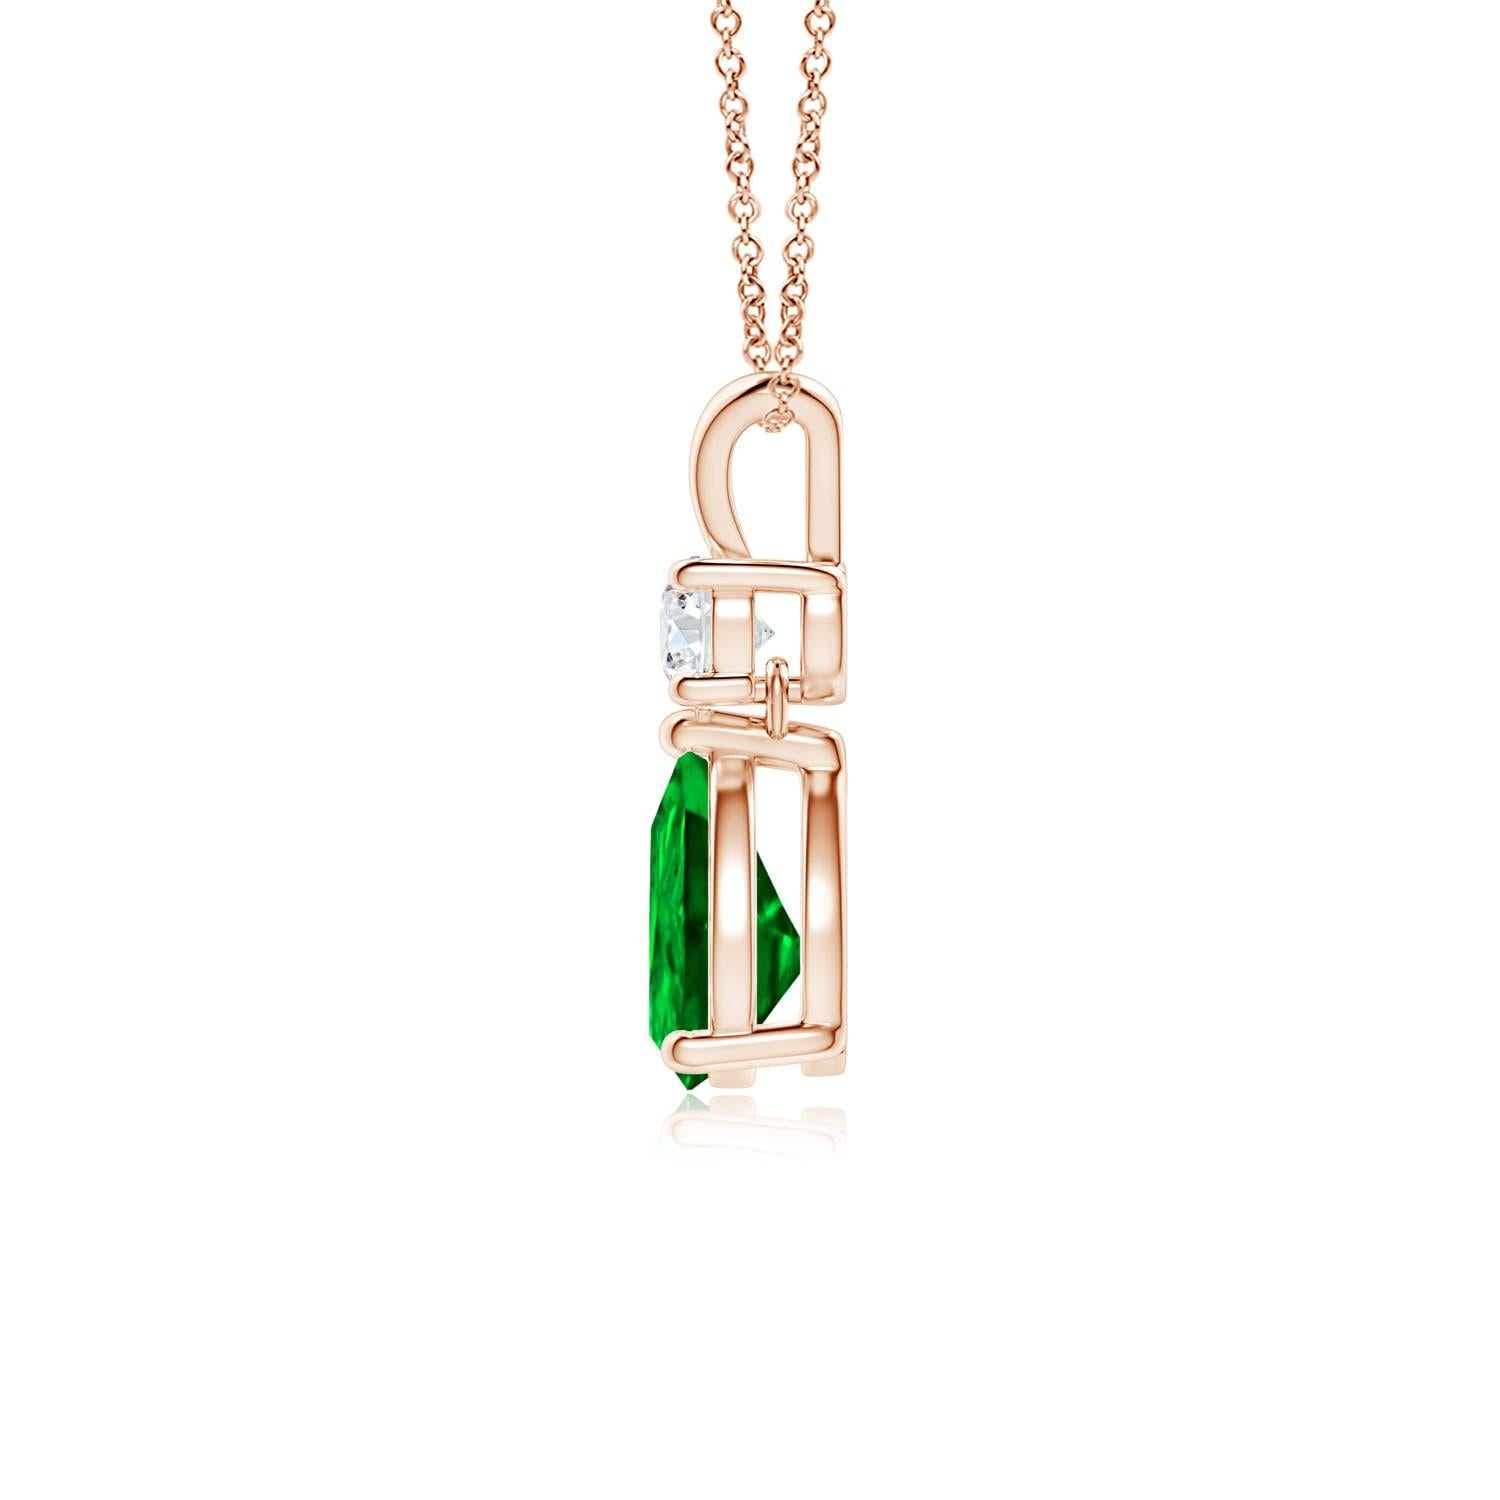 Ein leuchtend grüner Smaragd im Birnenschliff baumelt an einem funkelnden weißen Diamanten an diesem eleganten Tropfenanhänger. Der glänzende V-Balken verleiht diesem Anhänger aus 14 Karat Roségold mit Smaragd und Diamant seine Schönheit. Er